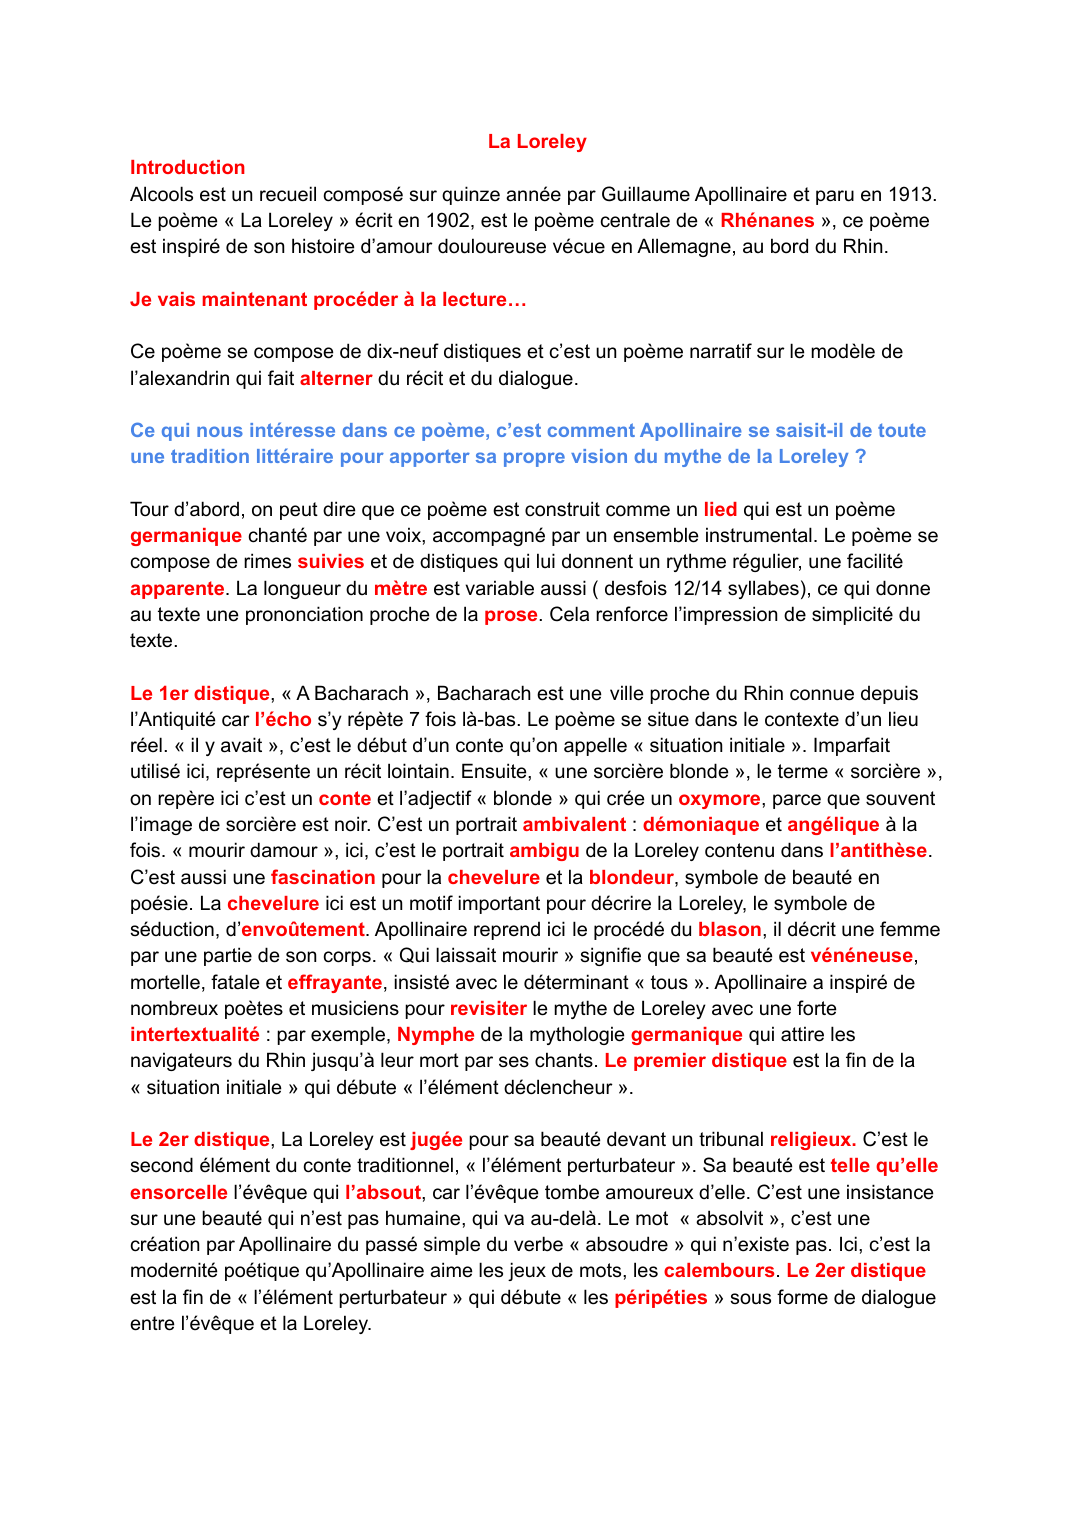 Prévisualisation du document Alcools par Guillaume Apollinaire: « La Loreley »